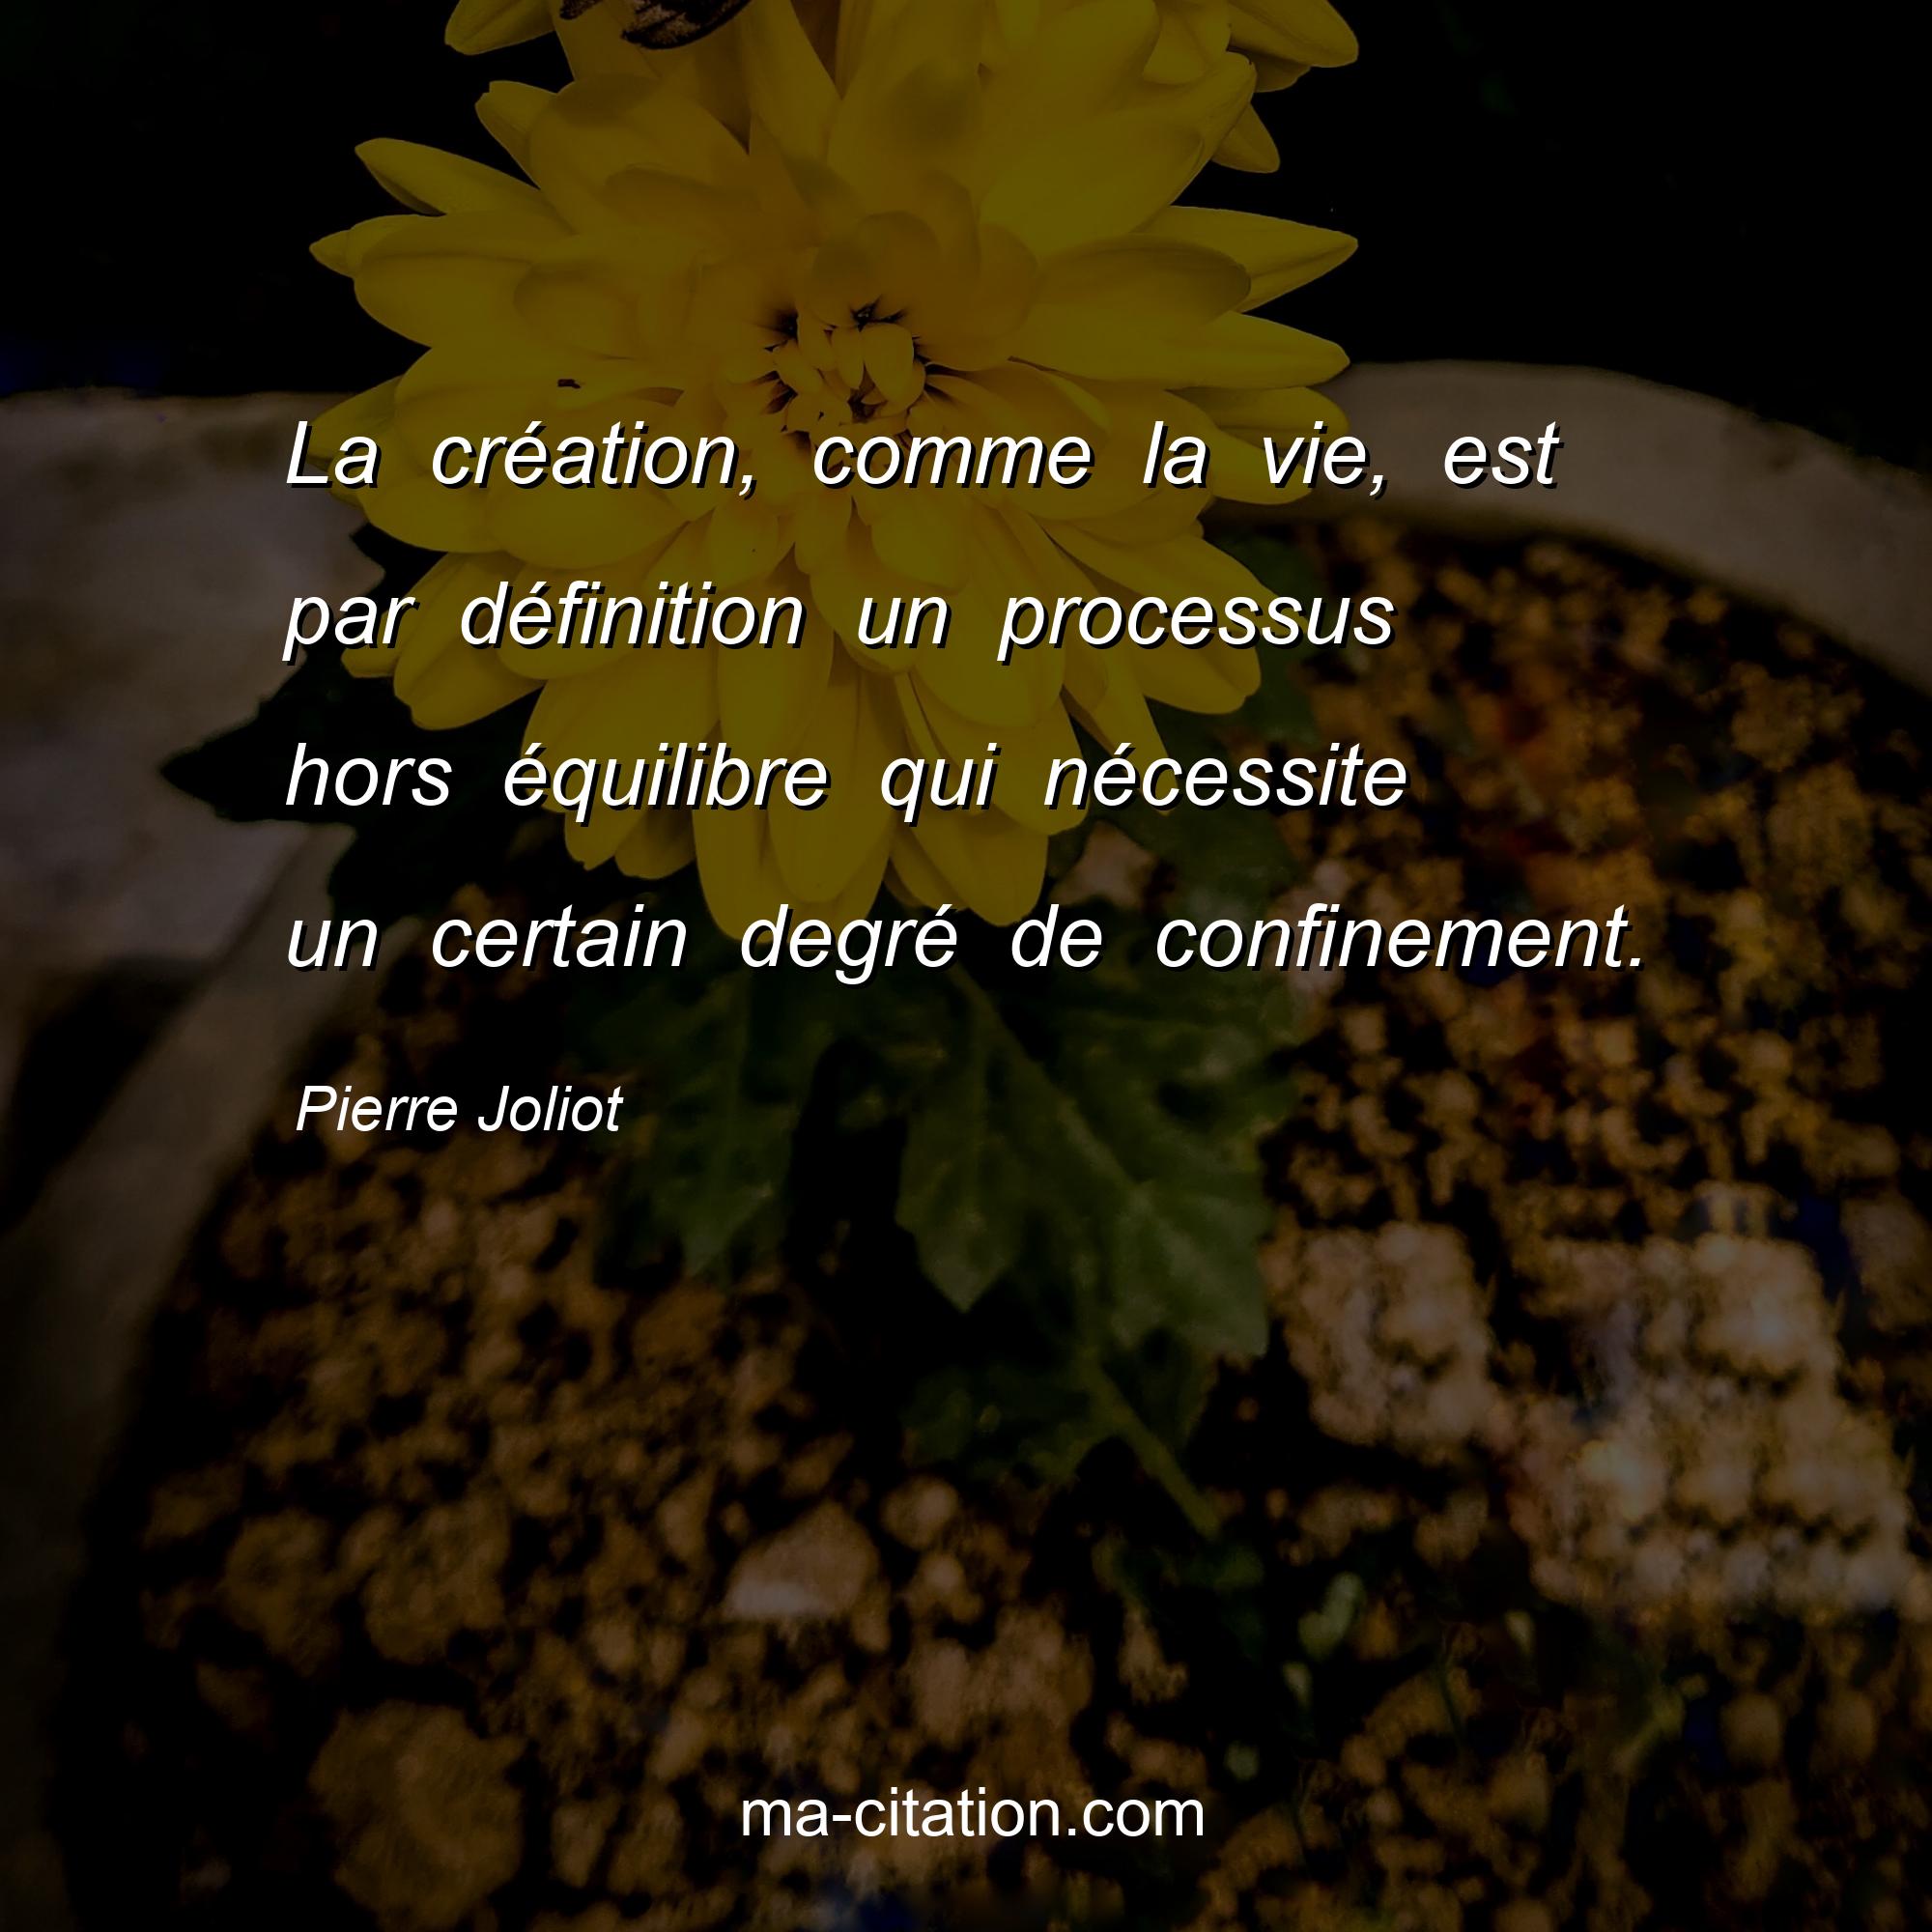 Pierre Joliot : La création, comme la vie, est par définition un processus hors équilibre qui nécessite un certain degré de confinement.